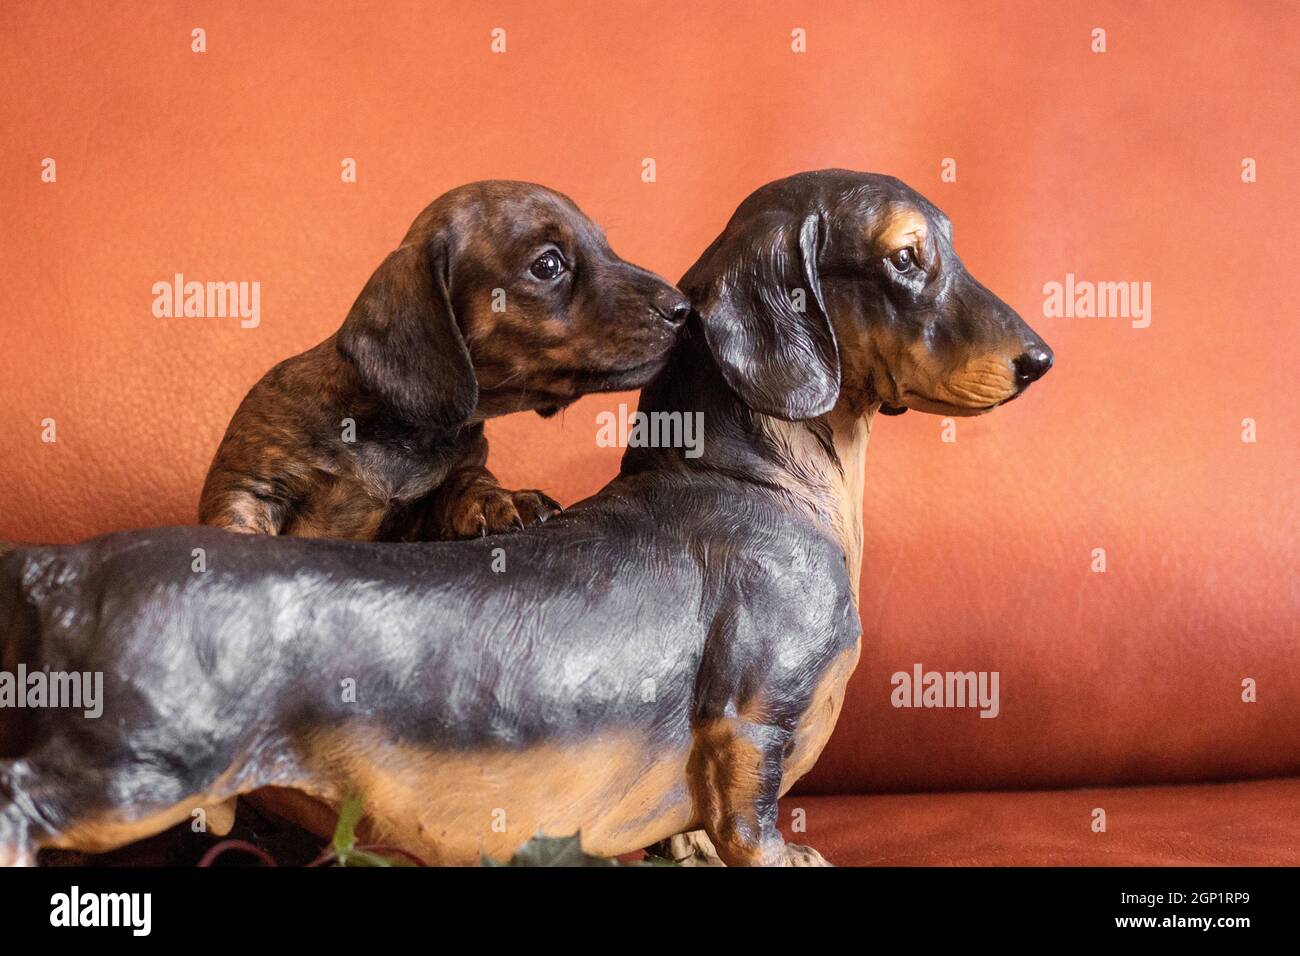 Doble dachshunds, vivo marrón marrón y negro de la perra del hindle y negro de la figura del doxie por el?ouch anaranjado adentro Foto de stock